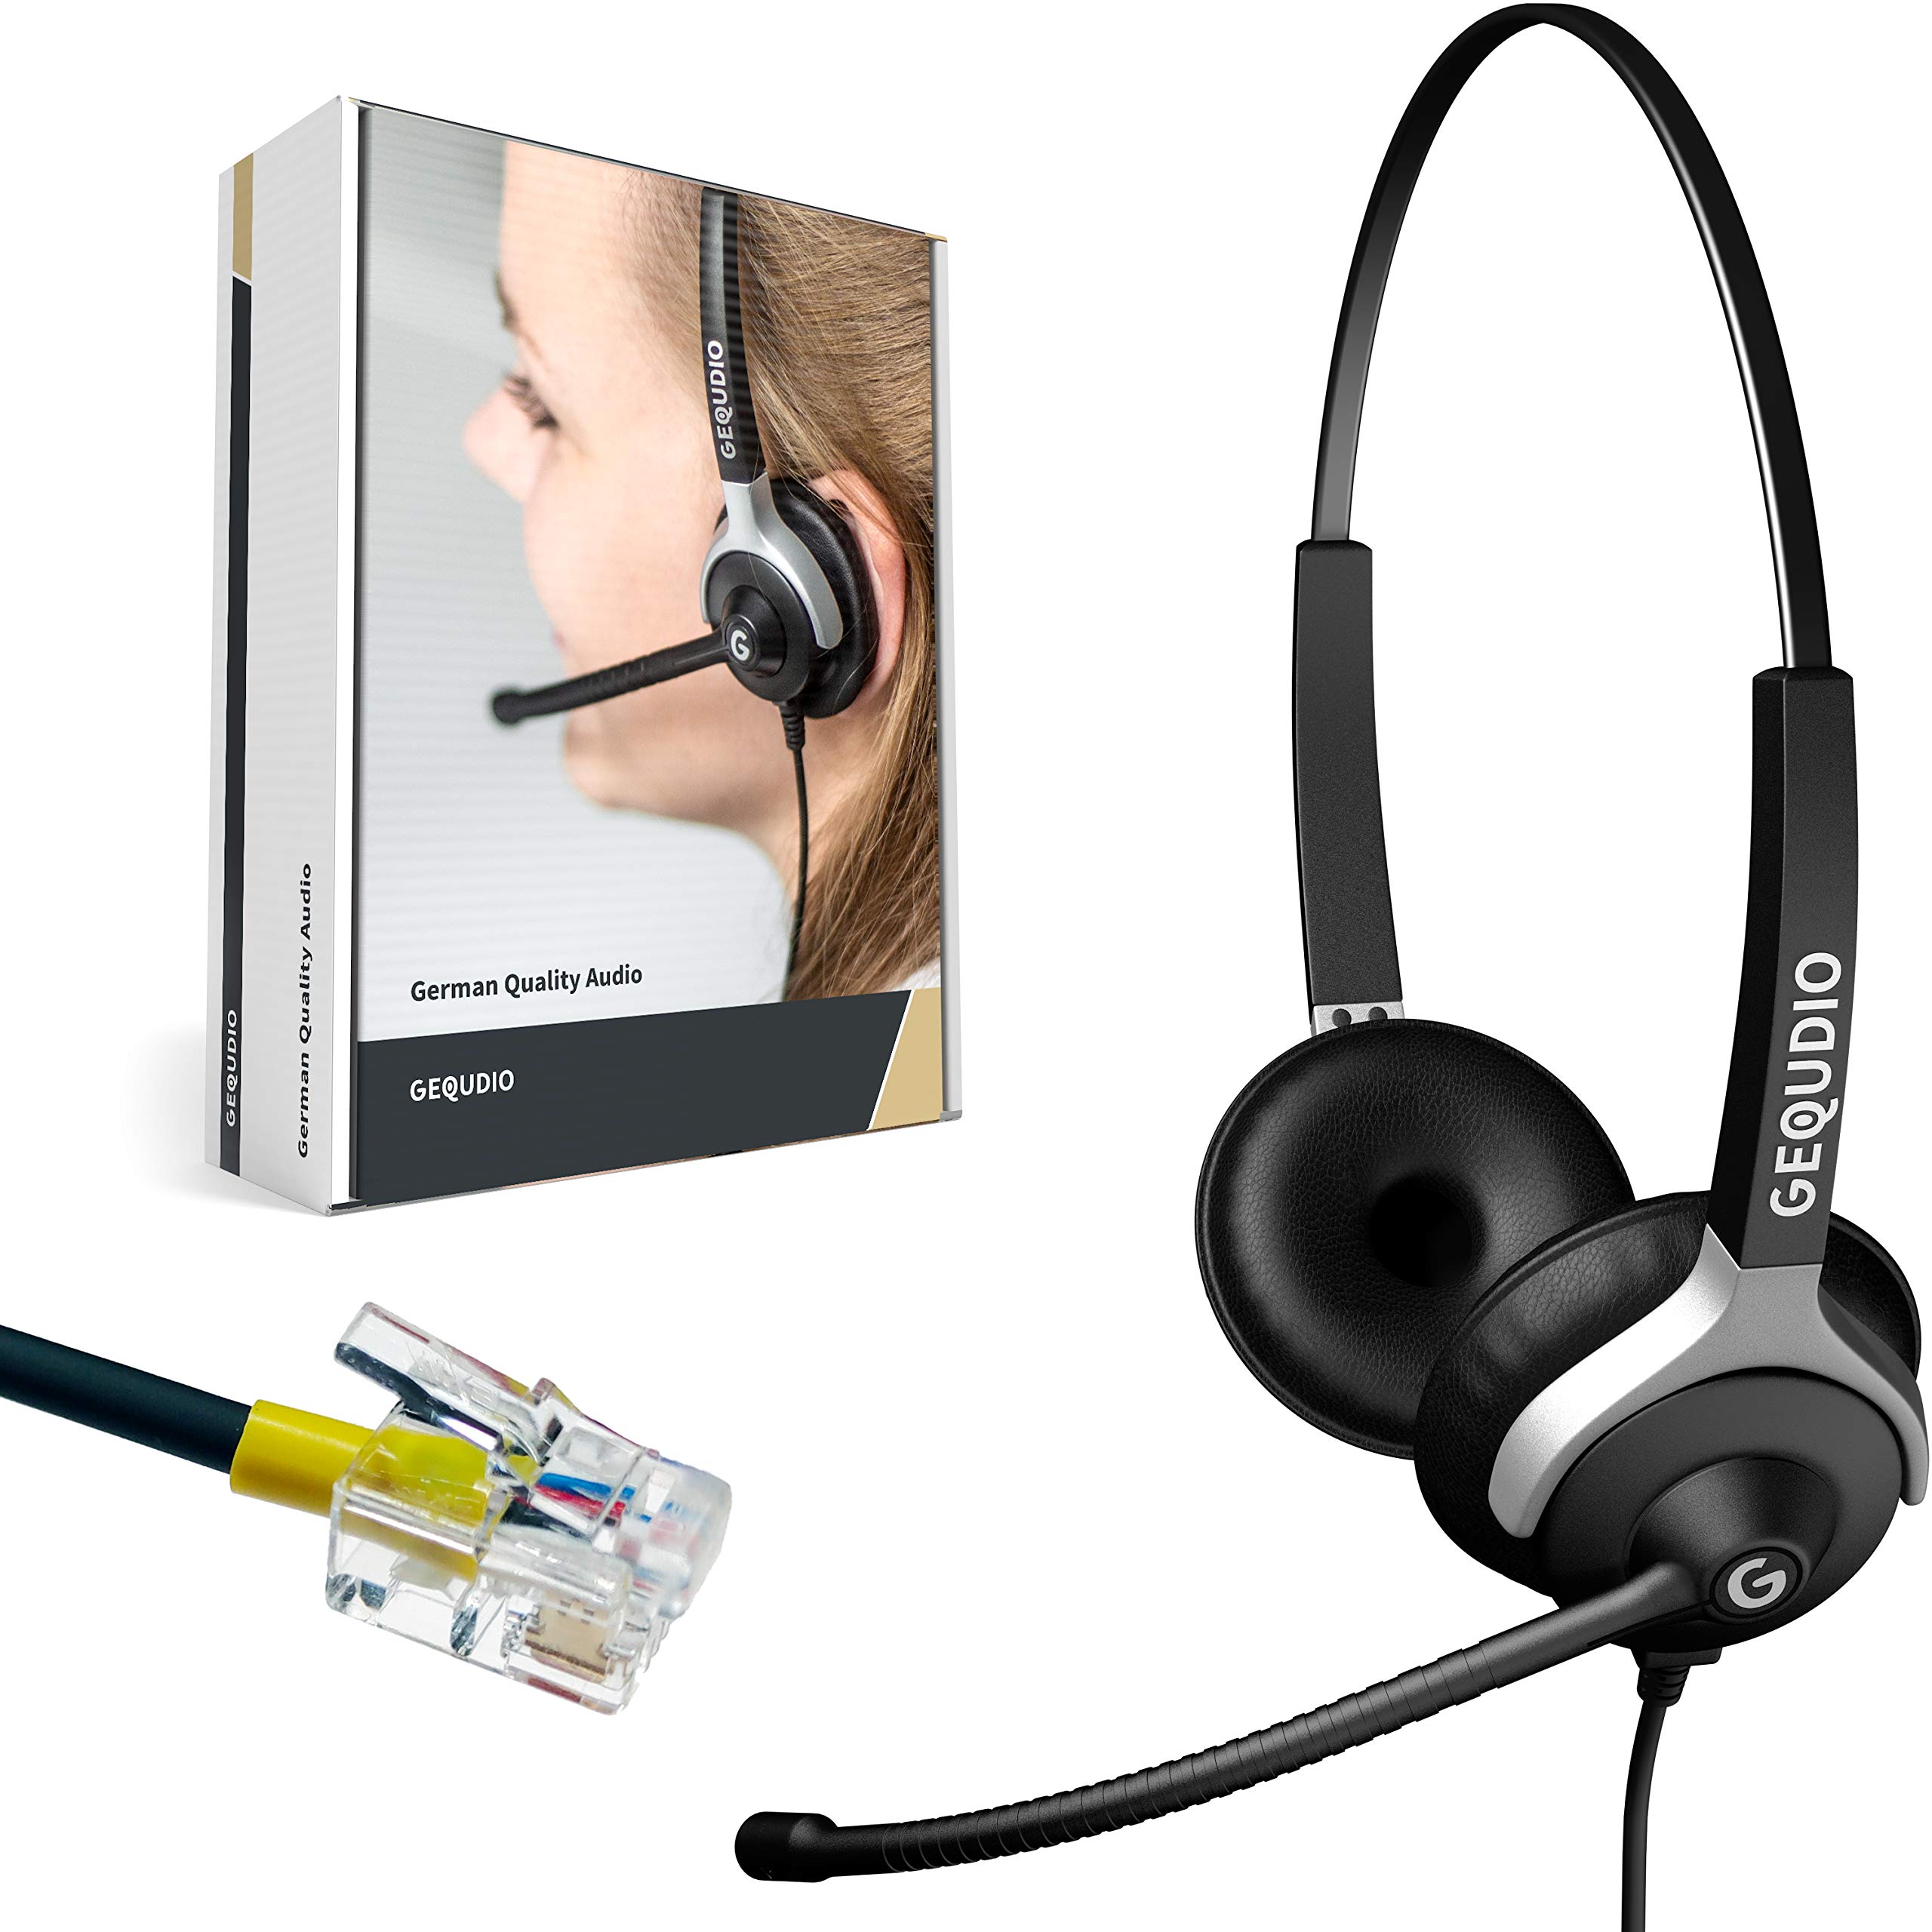 GEQUDIO Headset für GX3+ GX5+ und kompatibel mit Mitel, Aastra, GEQUDIO, Poly/Polycom und Gigaset-RJ Telefon - inklusive RJ Kabel - Kopfhörer & Mikrofon mit Ersatz Polster - leicht 80g (2-Ohr)